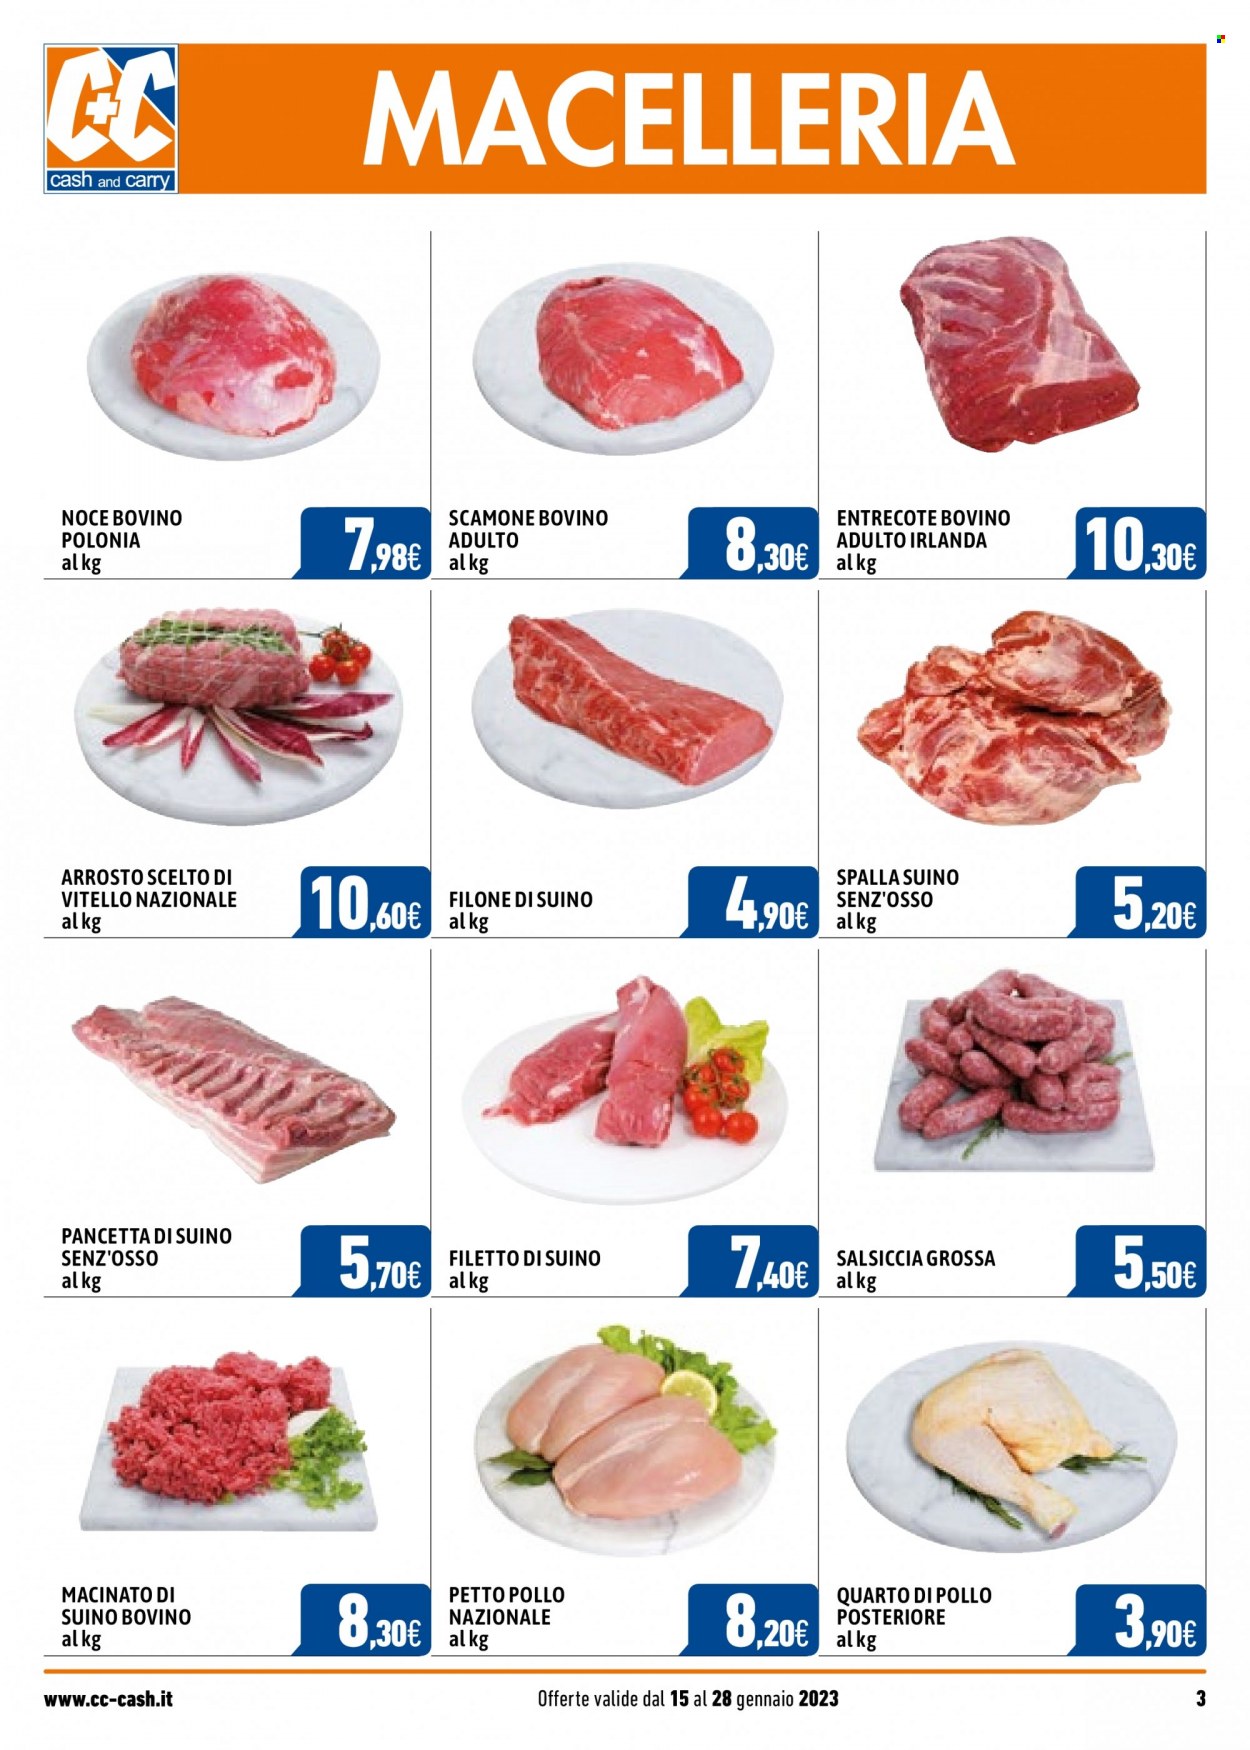 thumbnail - Volantino C+C Cash & Carry - 15/1/2023 - 28/1/2023 - Prodotti in offerta - entrecôte, manzo, vitello, salsiccia, carne macinata, macinato di suino, filetto di suino, pancetta. Pagina 3.